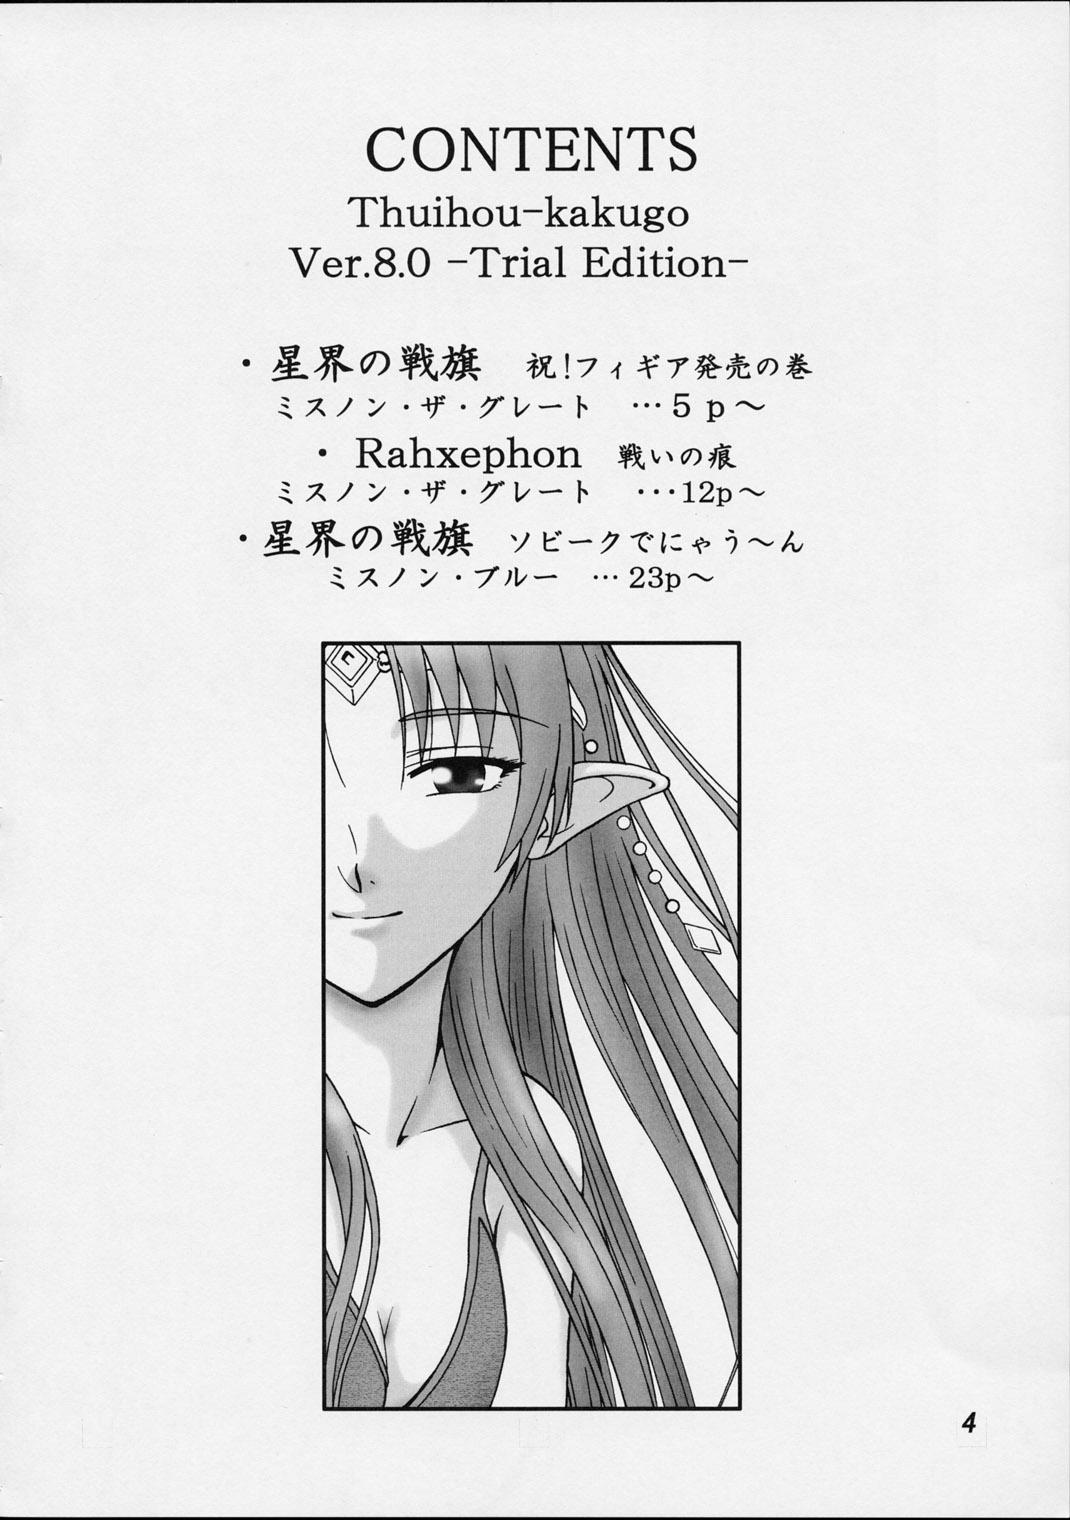 Interracial Porn (C62) [Oretachi Misnon Ikka (Misnon the Great, Misnon Blue)] Thuihou-kakugo Ver.8.0 -Trial Edition- (Seikai no Senki, RahXephon) - Banner of the stars Rahxephon Blackcock - Page 3